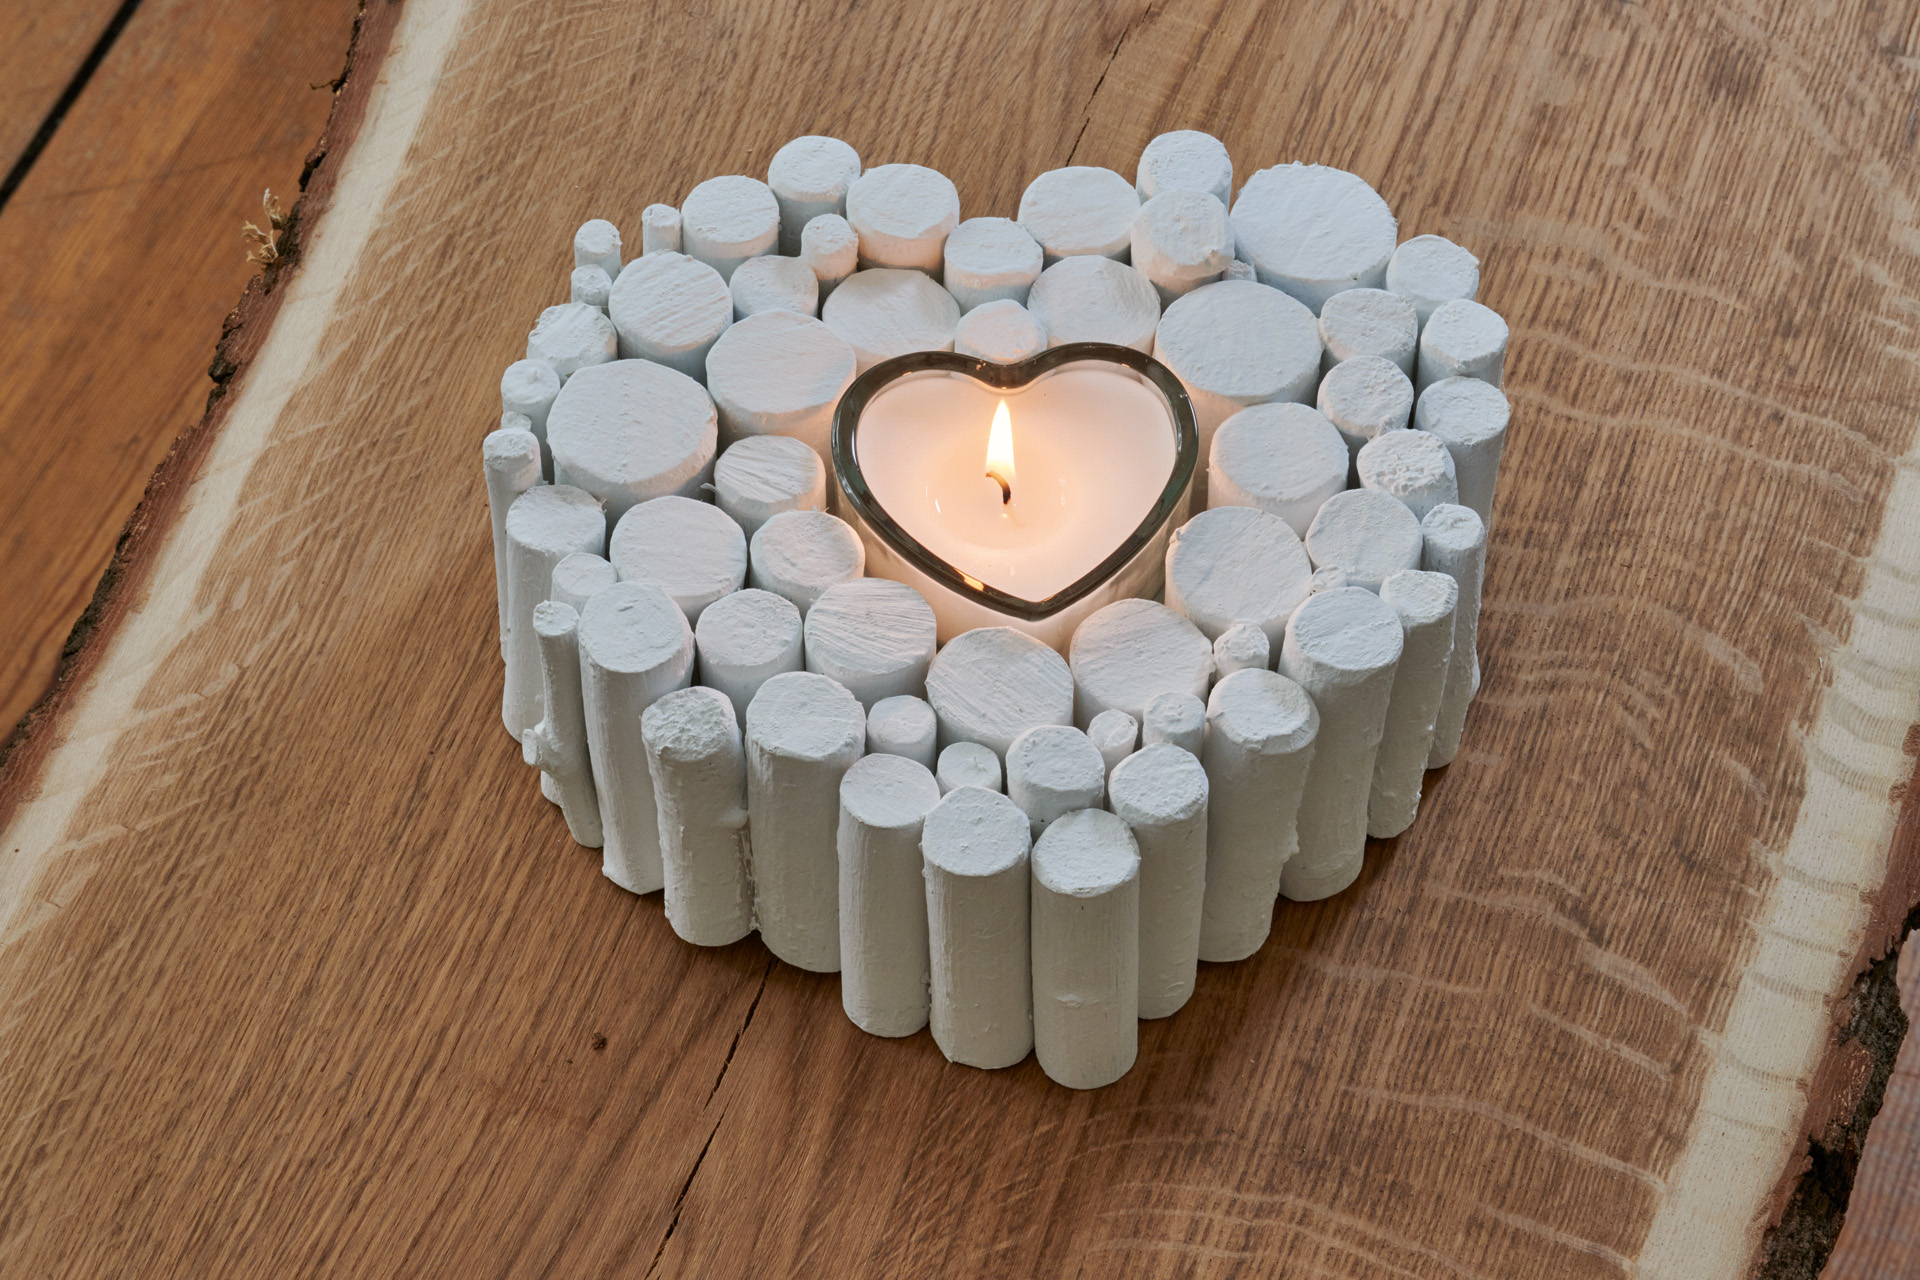 Cuore bianco fatto di rami con candela accesa come regalo per San Valentino